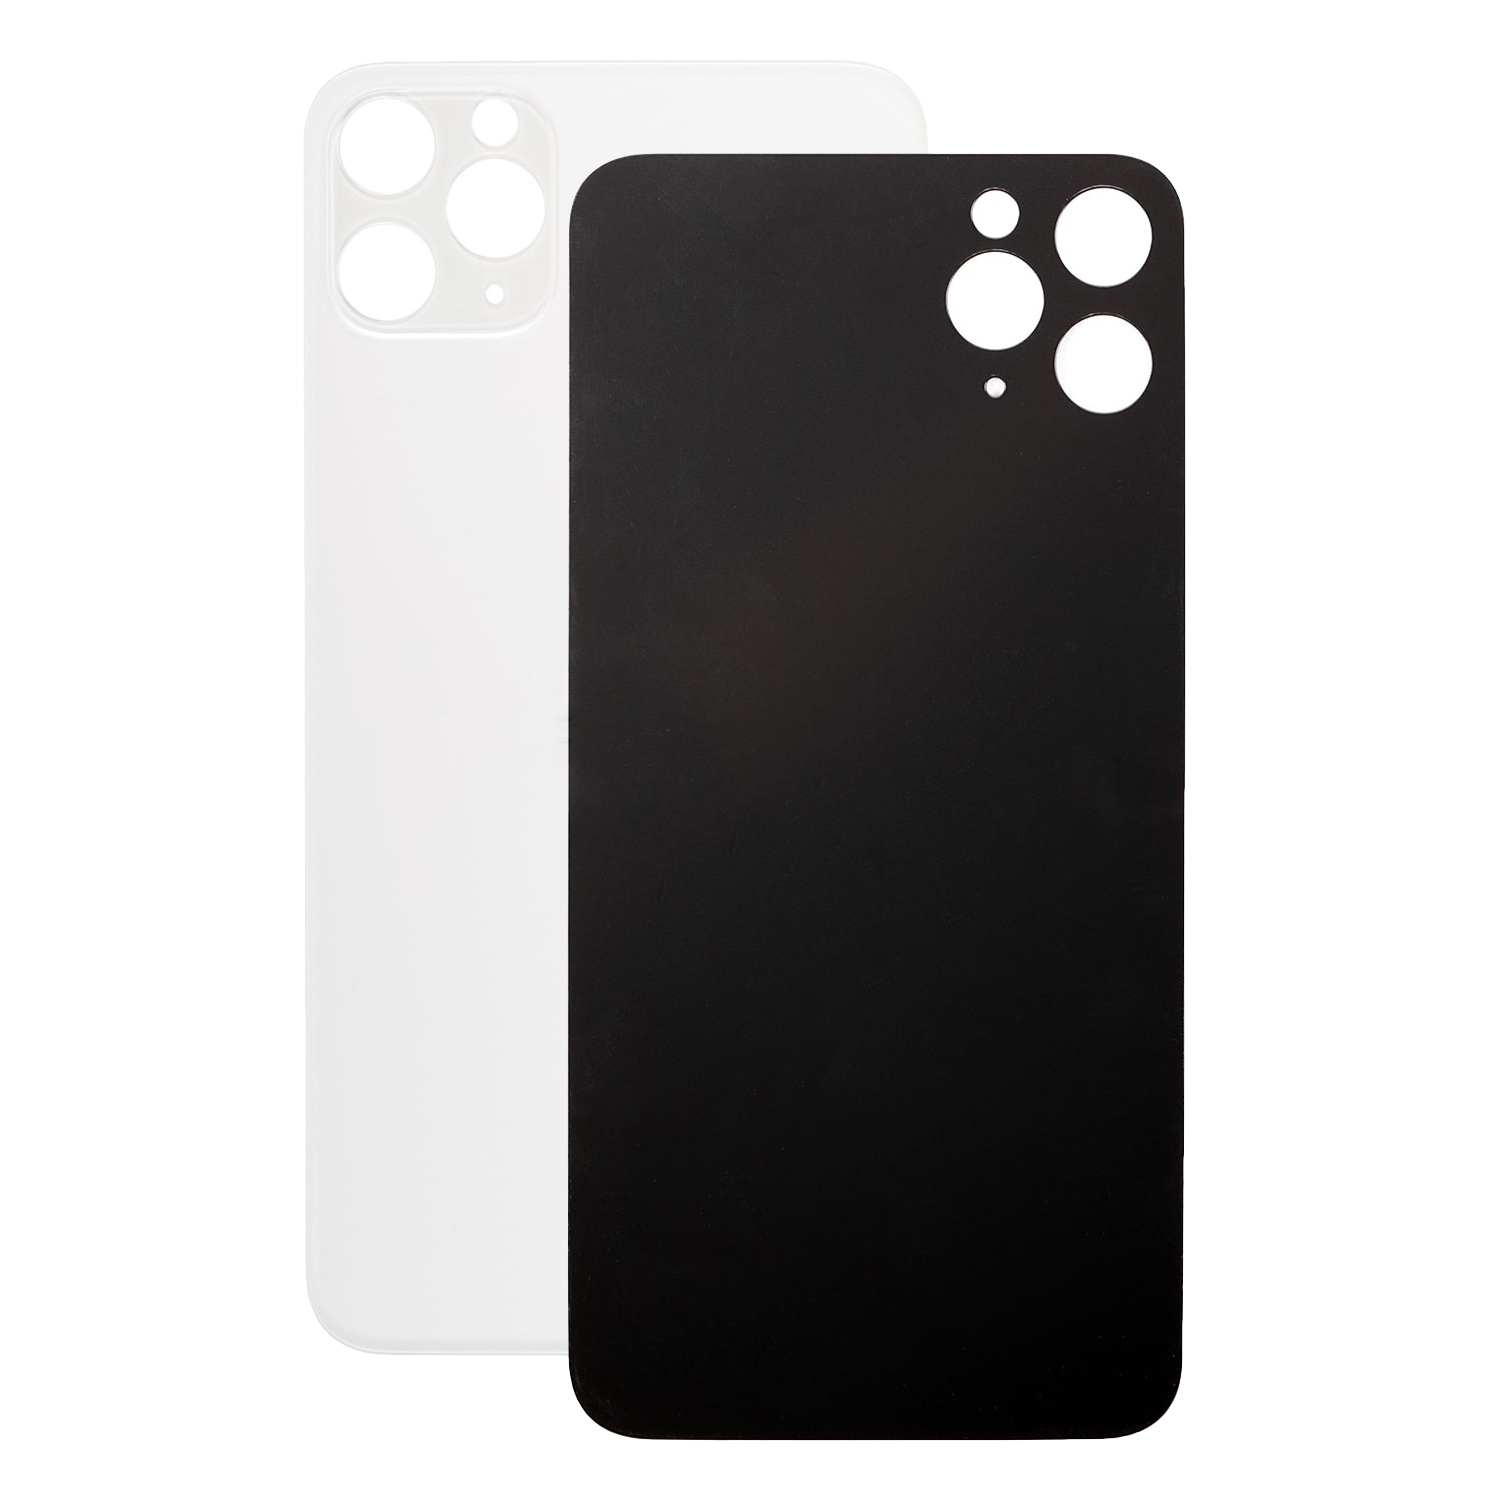 Задняя крышка для iPhone 11 Pro Max Orig (белый)(с увеличеным вырезом под камеру)